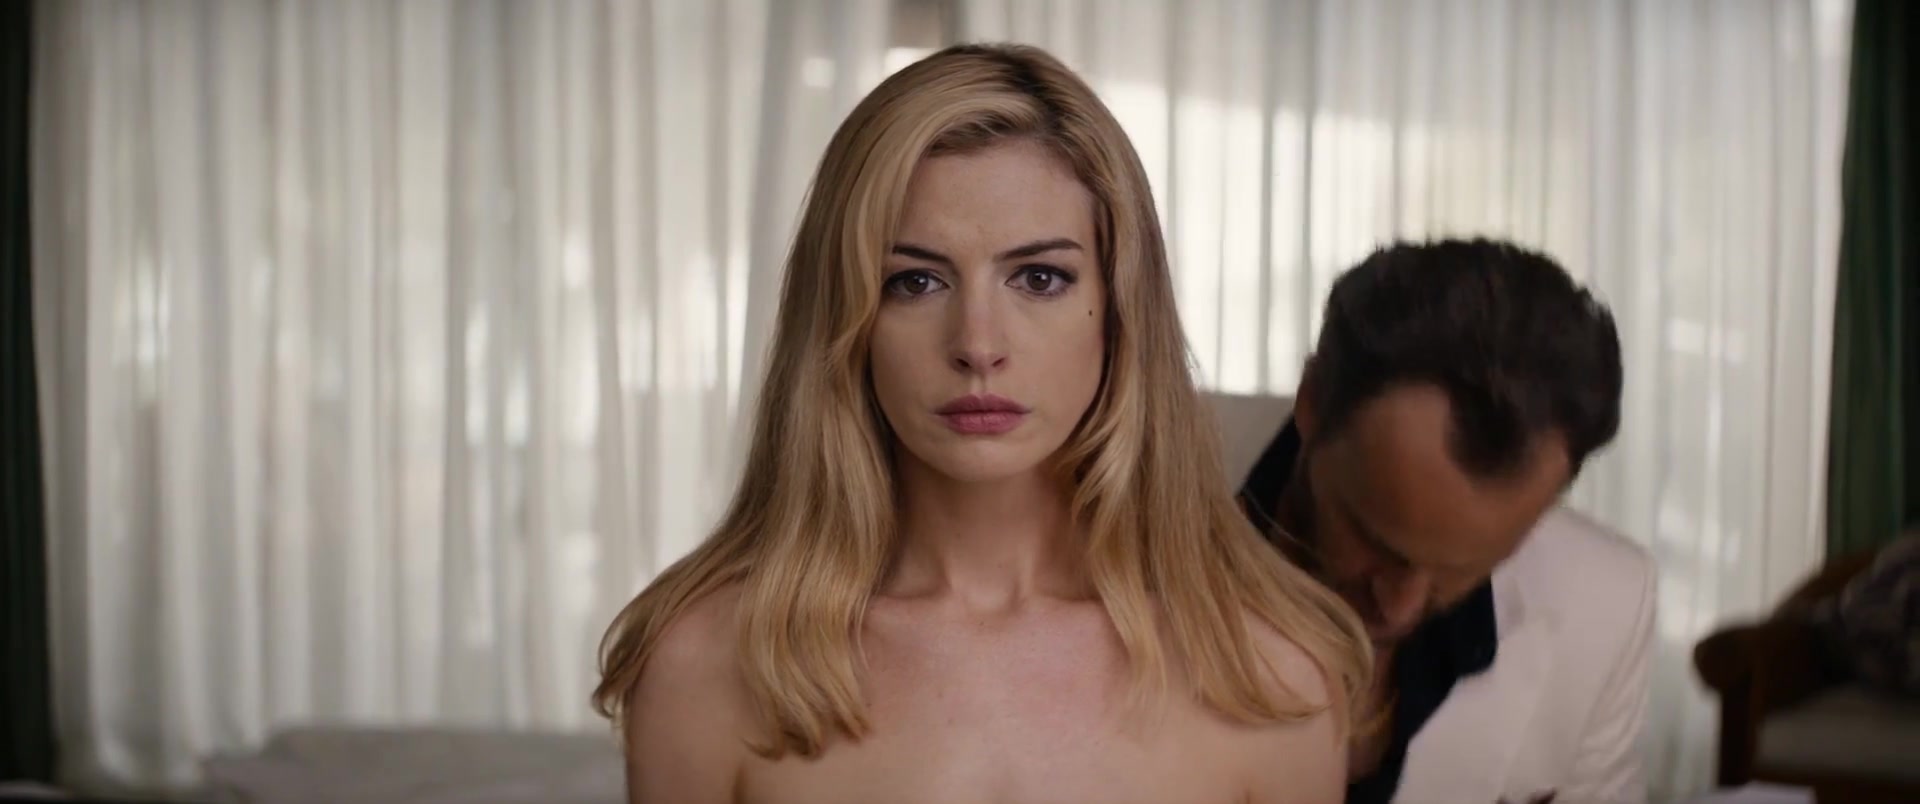 Anne Hathaway, Diane Lane nude - Serenity (2019) Video » Best Sexy ...